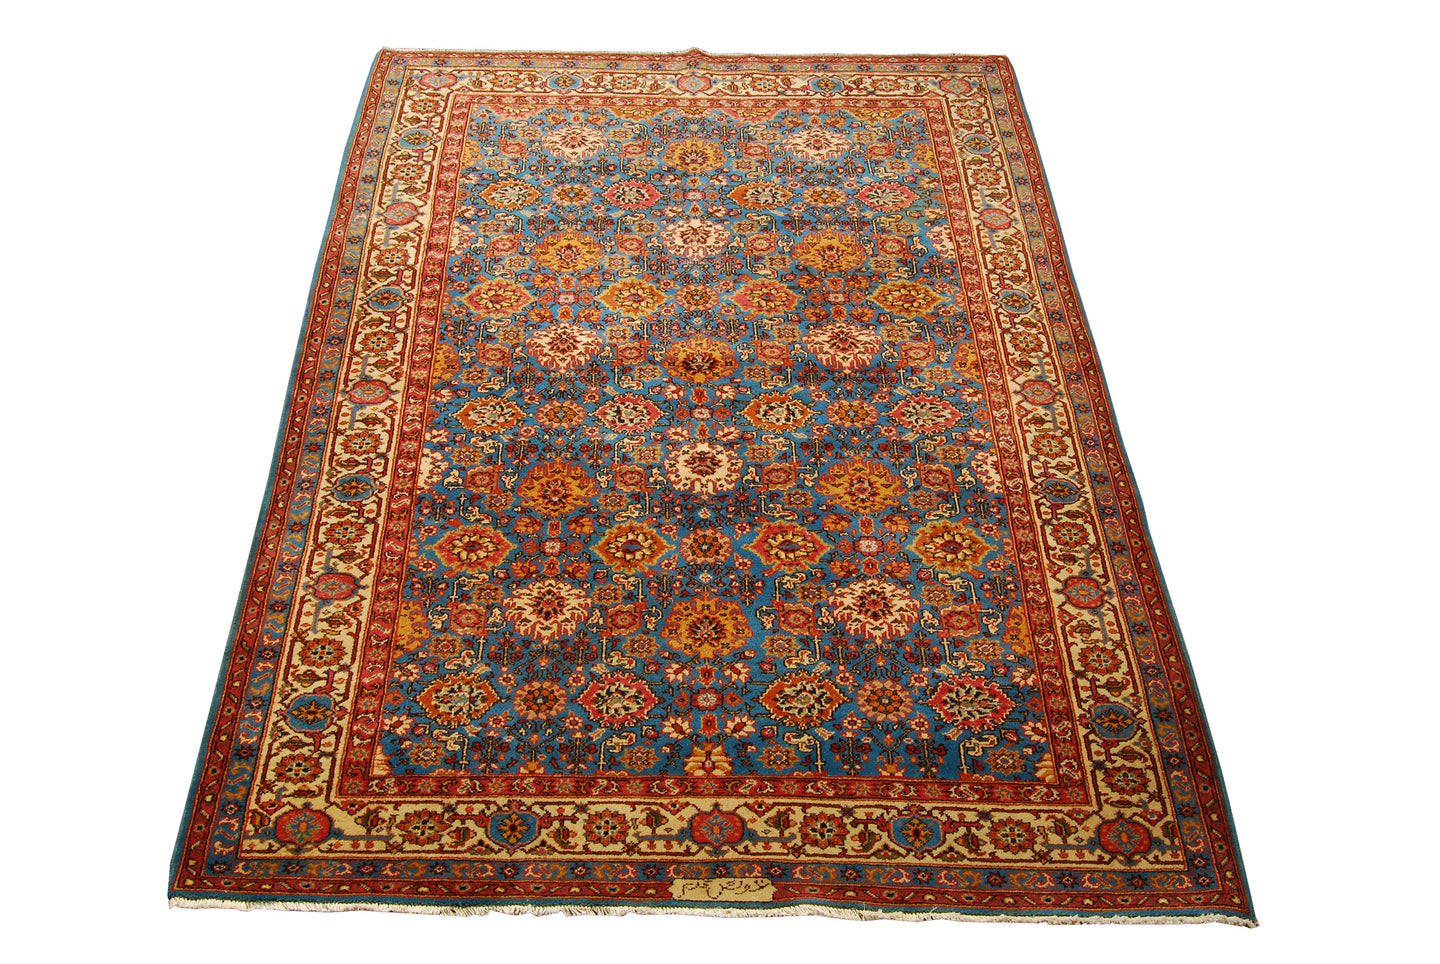 Romania Authentic original hand knotted carpet 260x175 CM